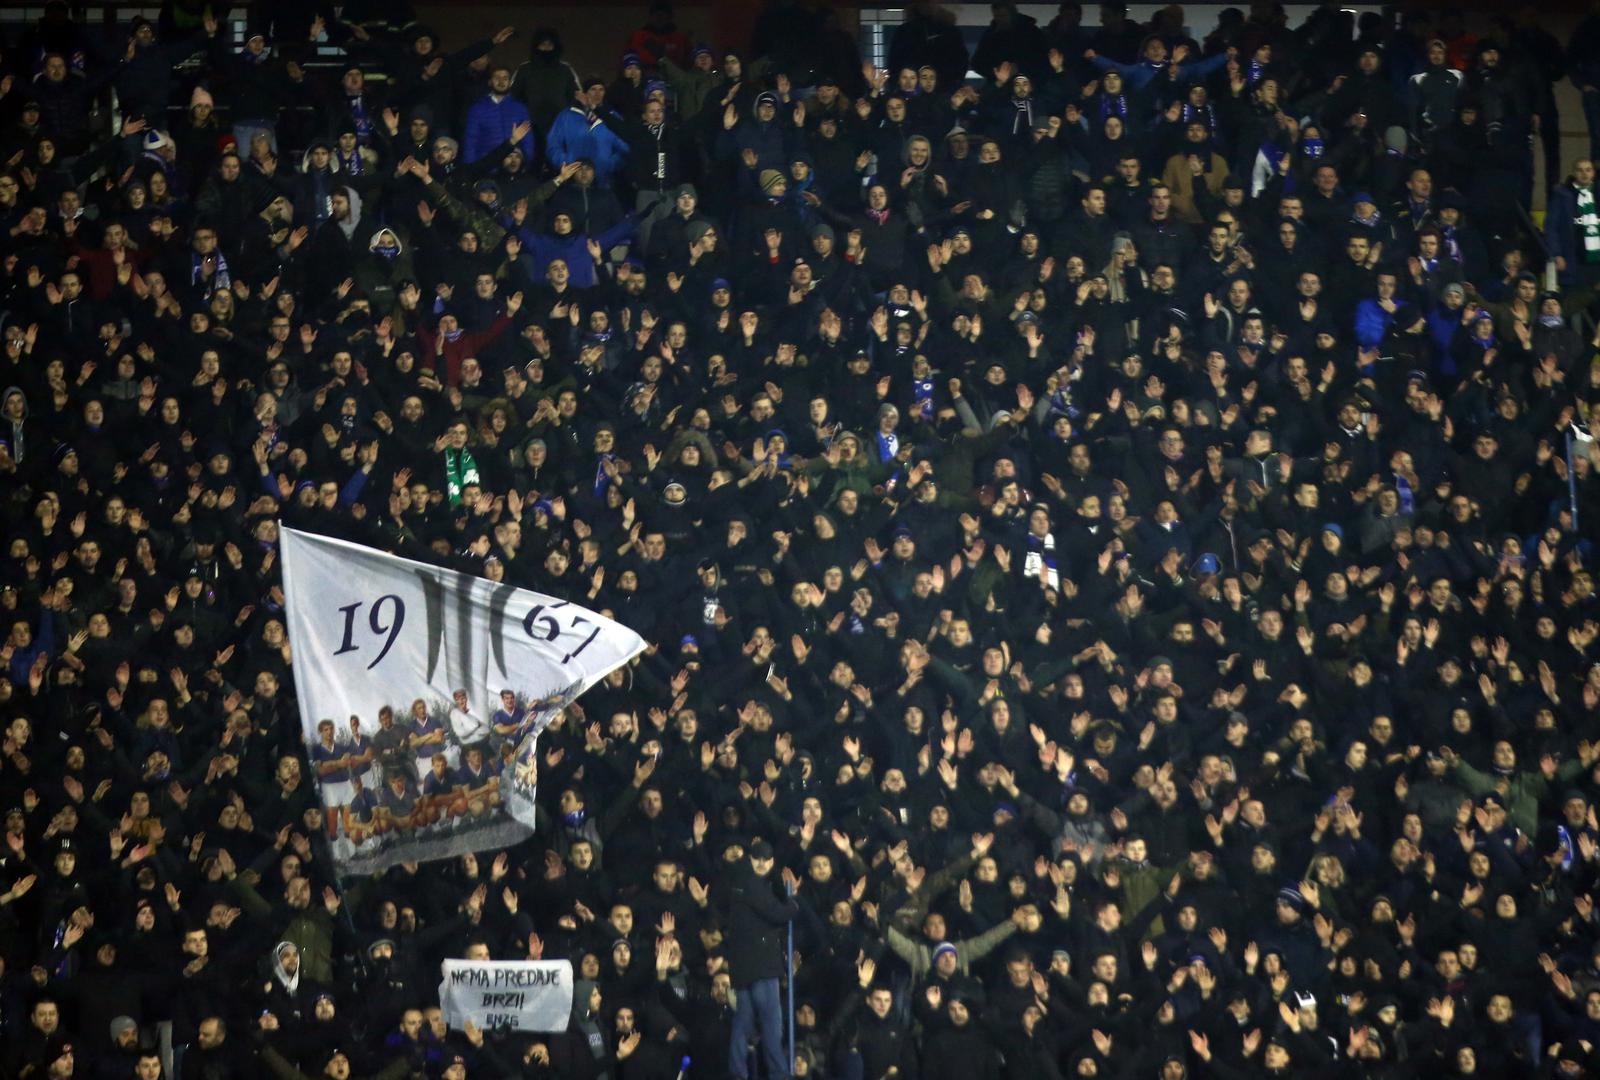 Iako je temperatura u Zagrebu bila oko nule, na tribinama se okupilo preko 12.000 navijača.